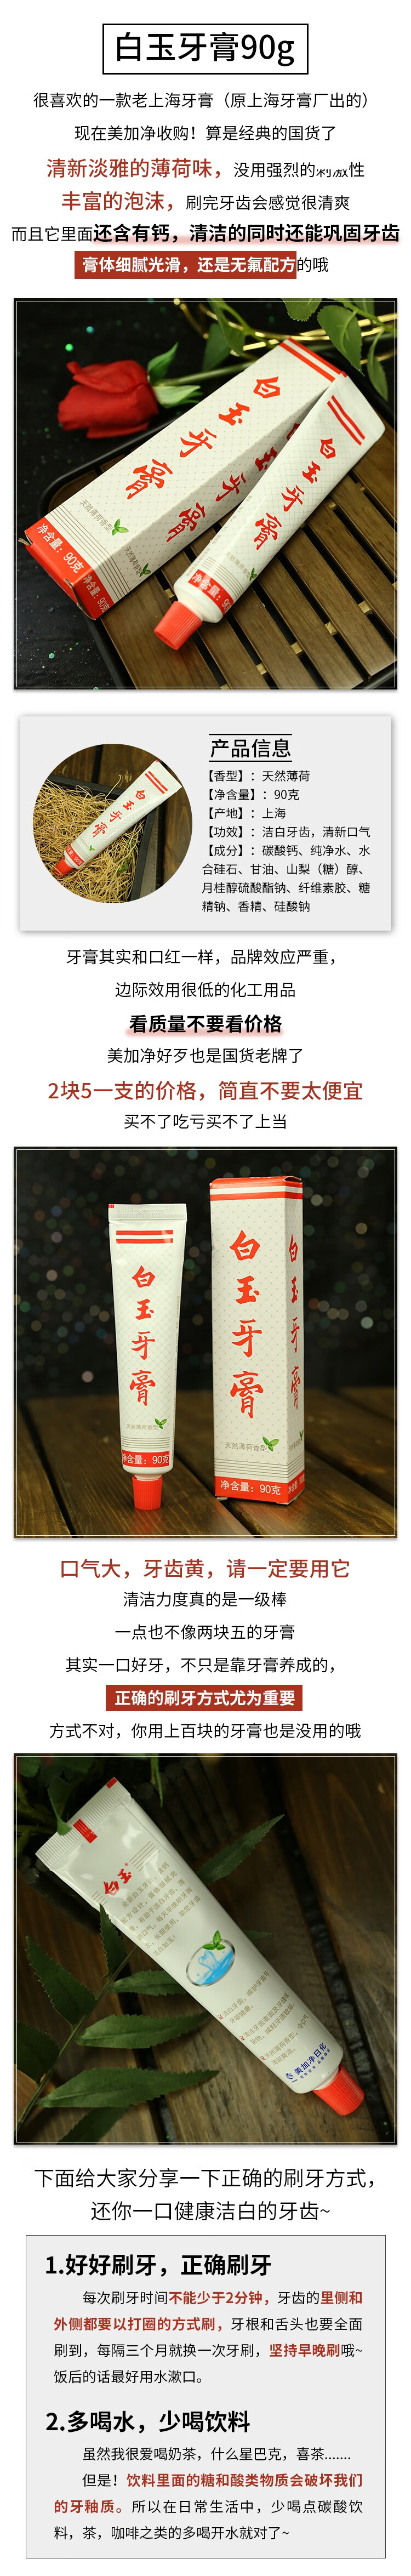 上海老牌白玉牙膏清新口气异味薄荷香型90g 蛀固齿护龈洁白牙齿国货